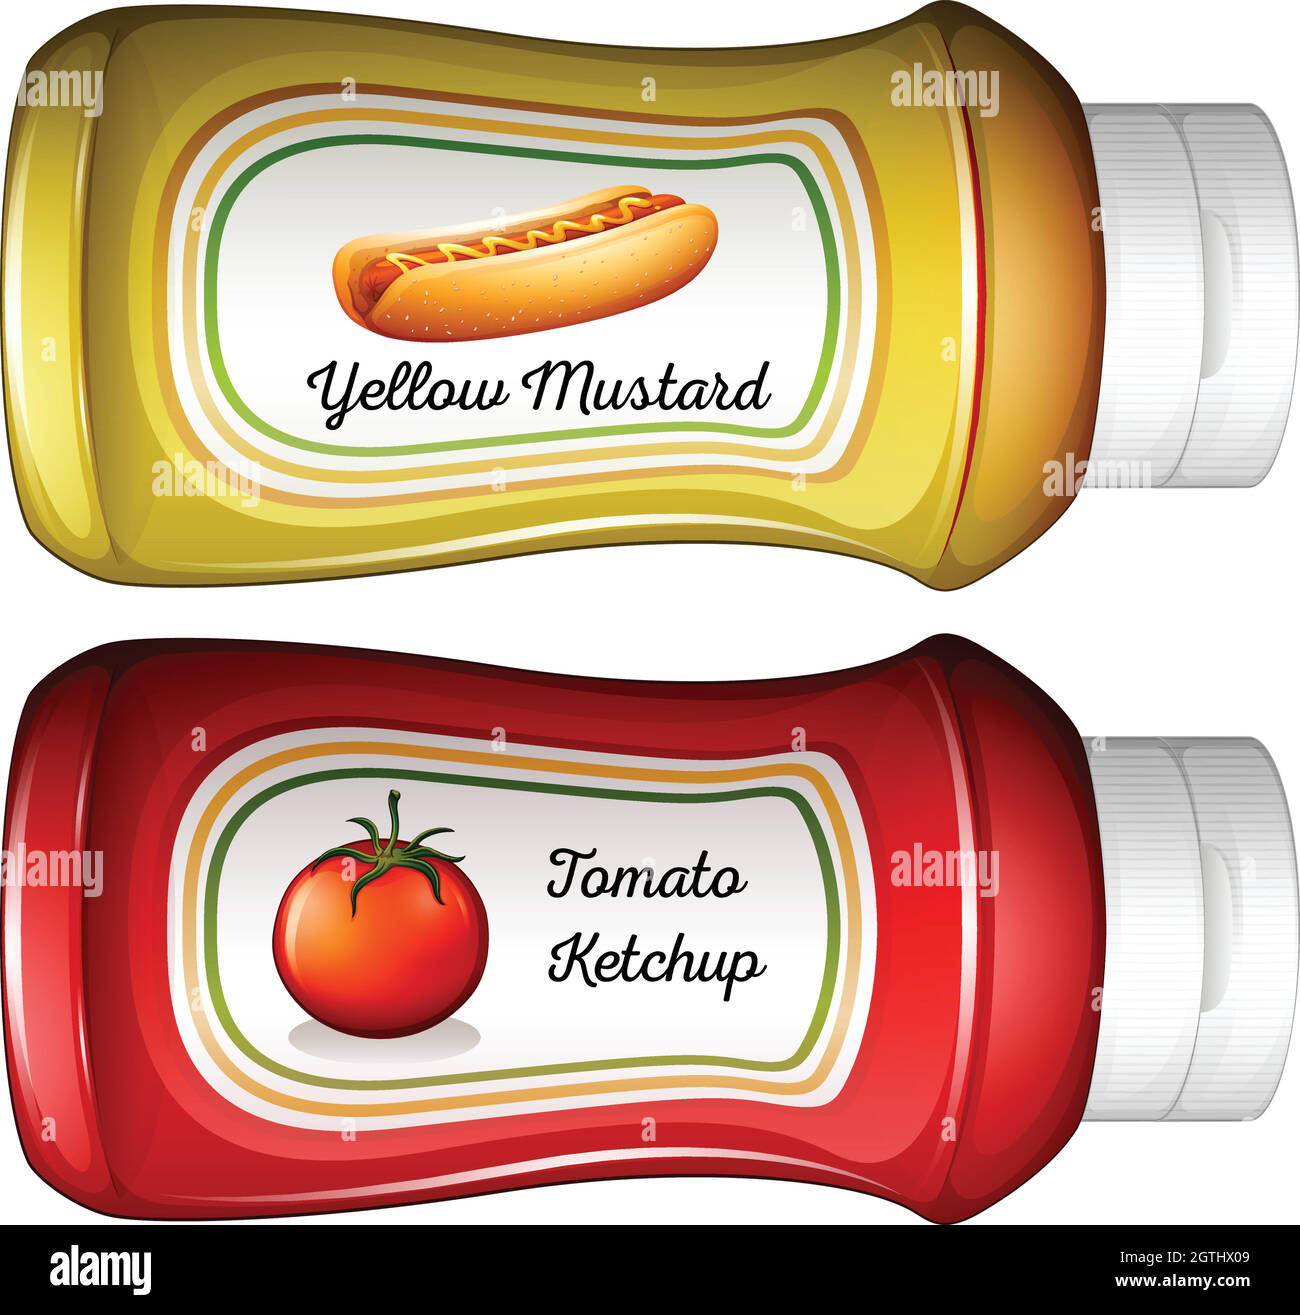 Flasche Senf und Ketchup Stock Vektor